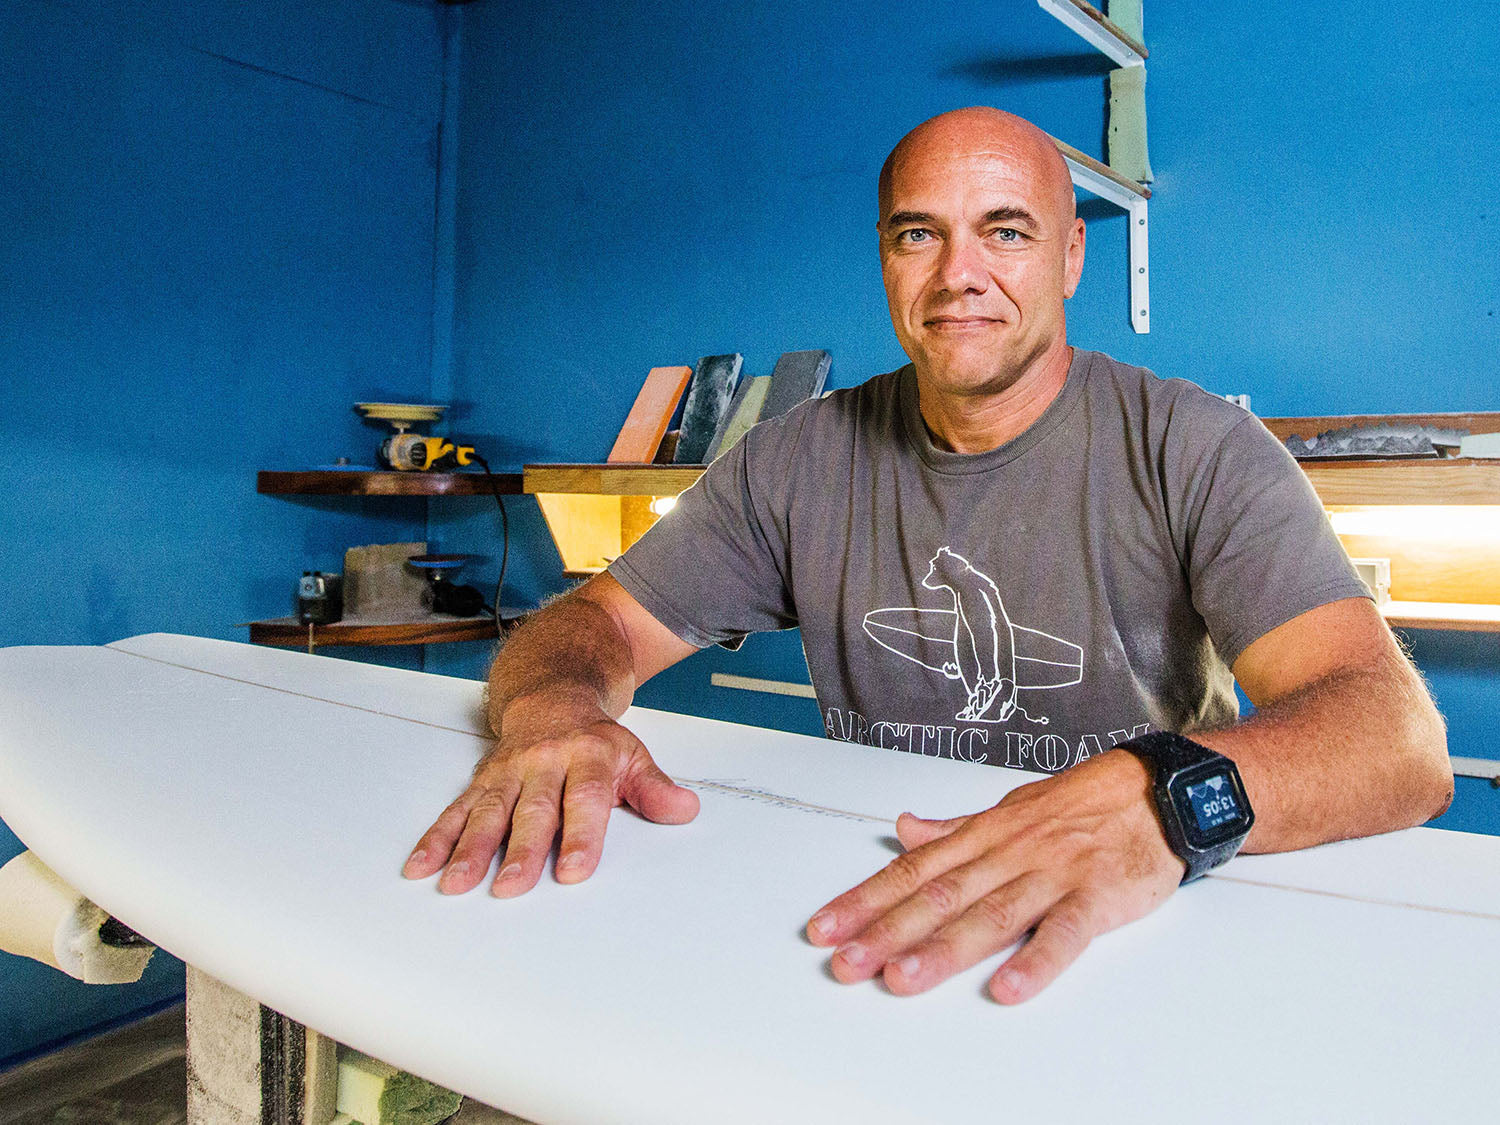 Shaper de surf Johnny Cabianca dans son atelier de shape